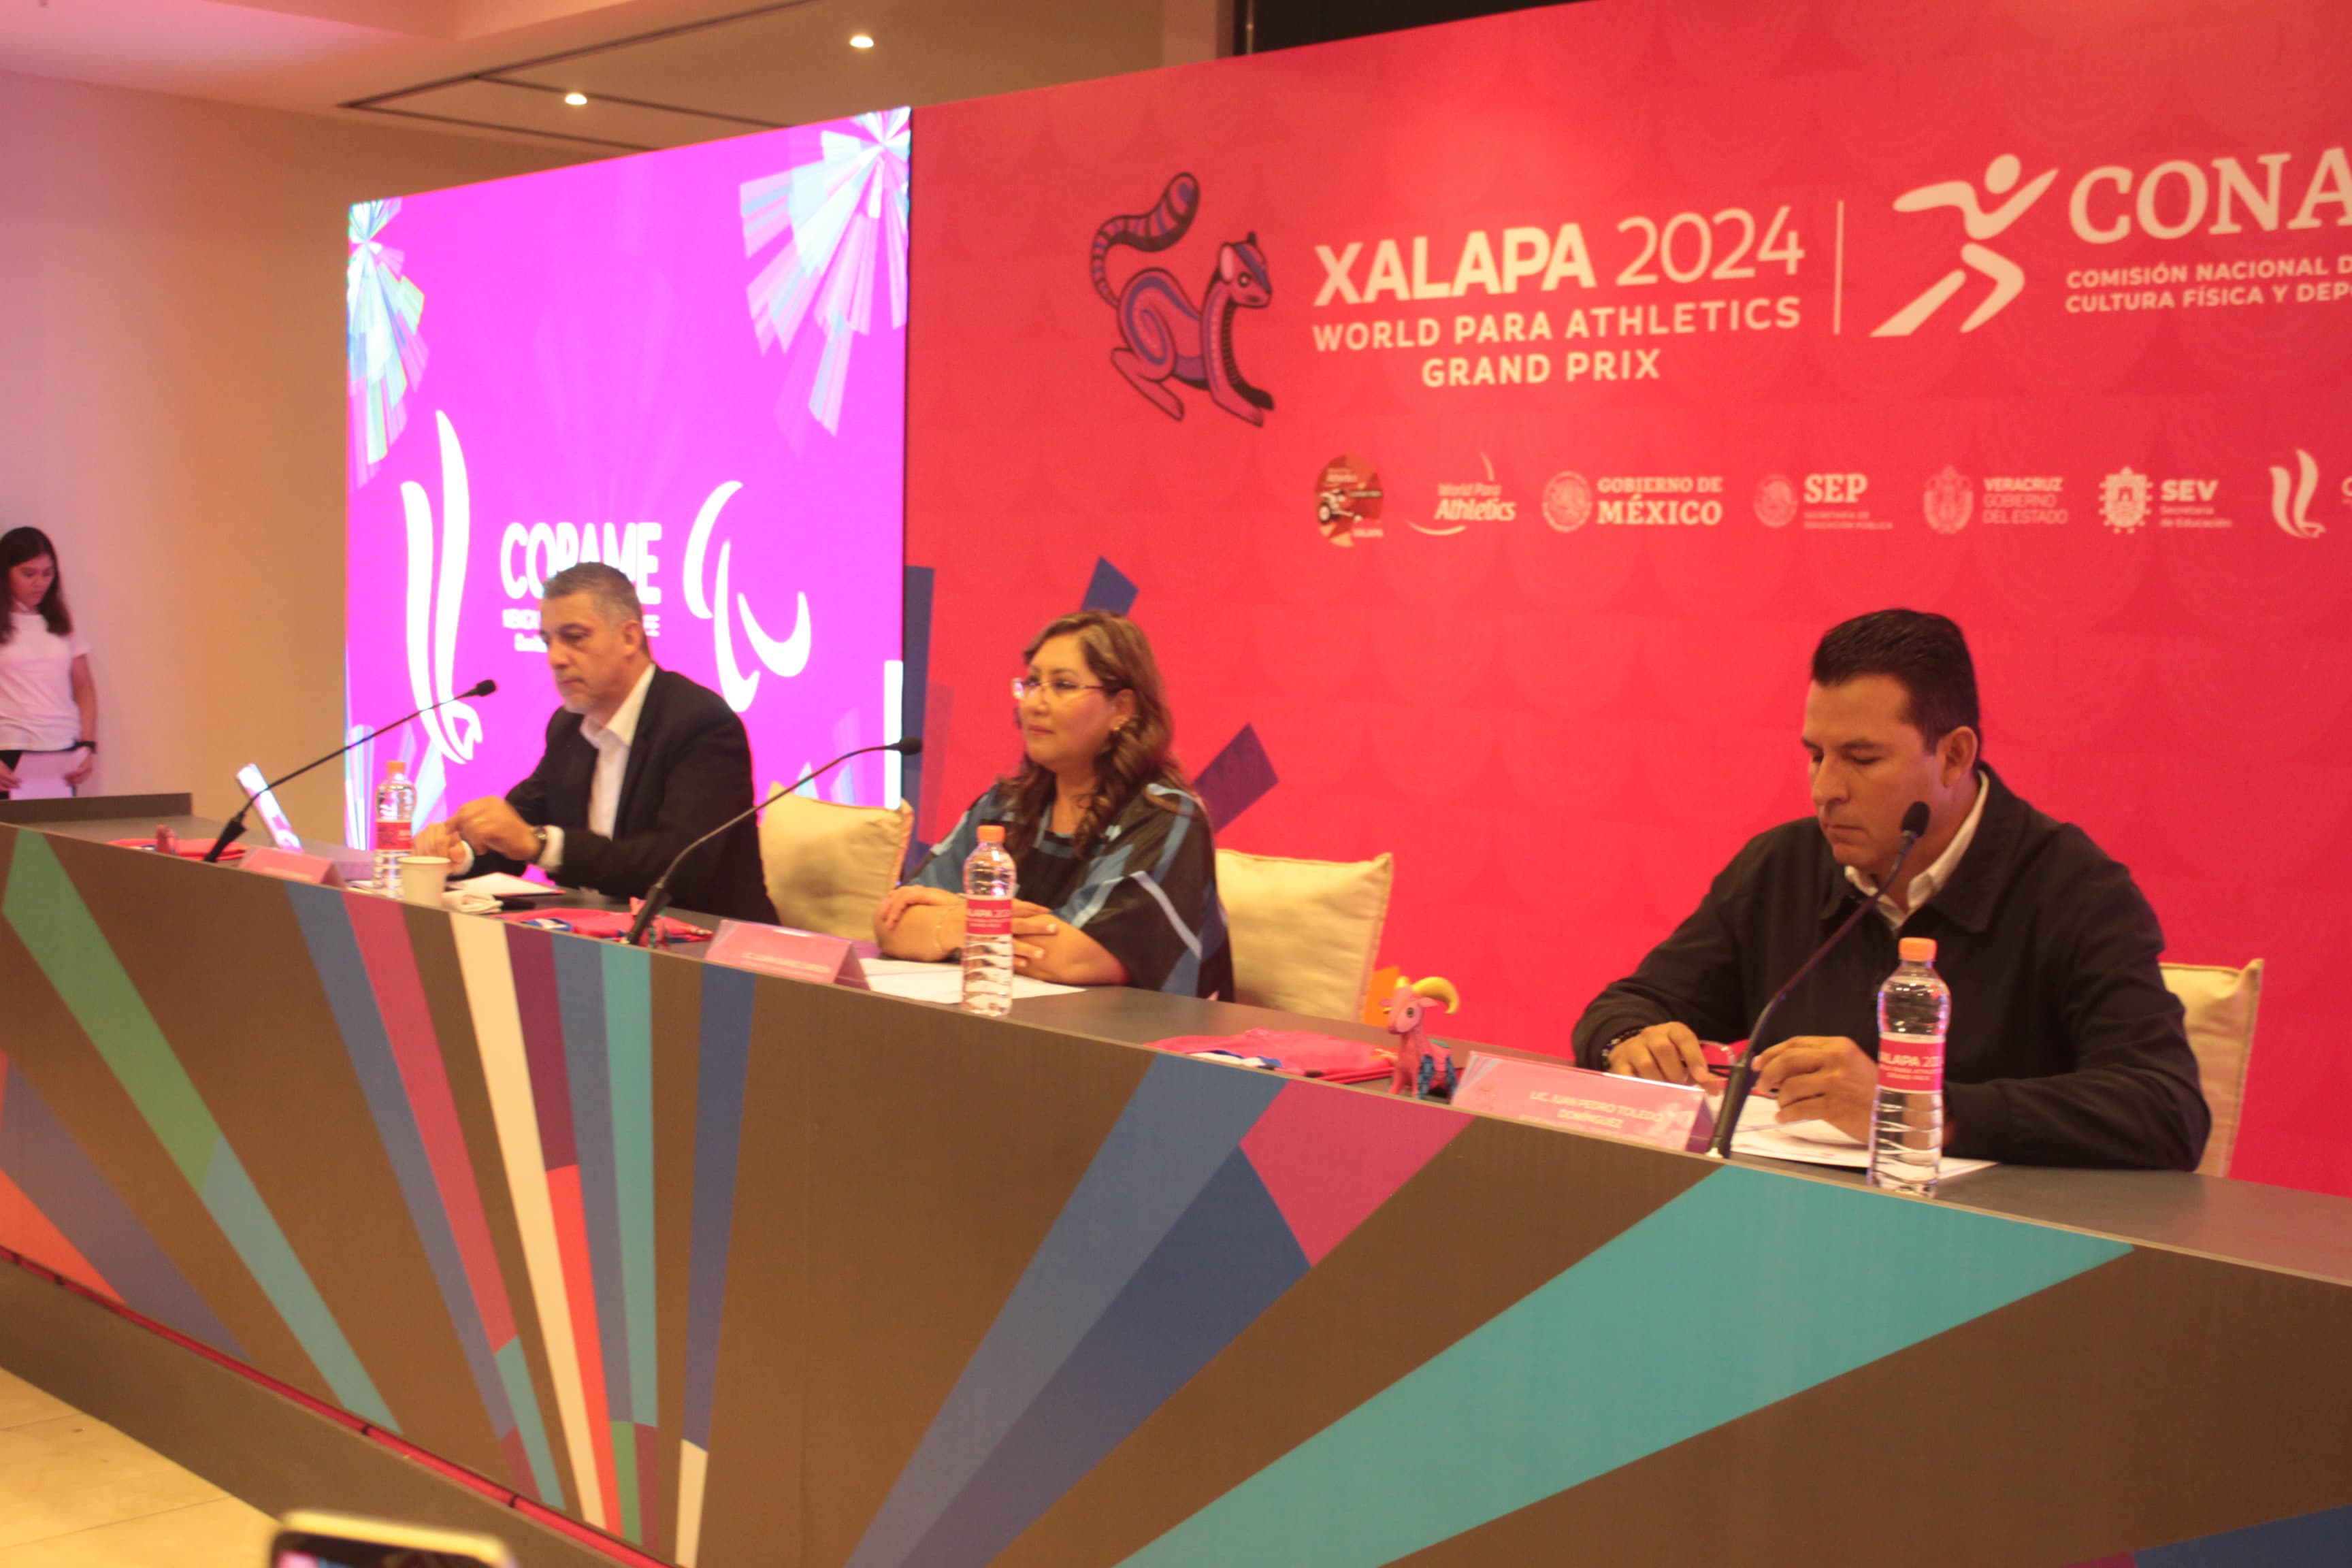 Presentación oficial del Grand Prix de Para Atletismo Xalapa 2024. Cortesía